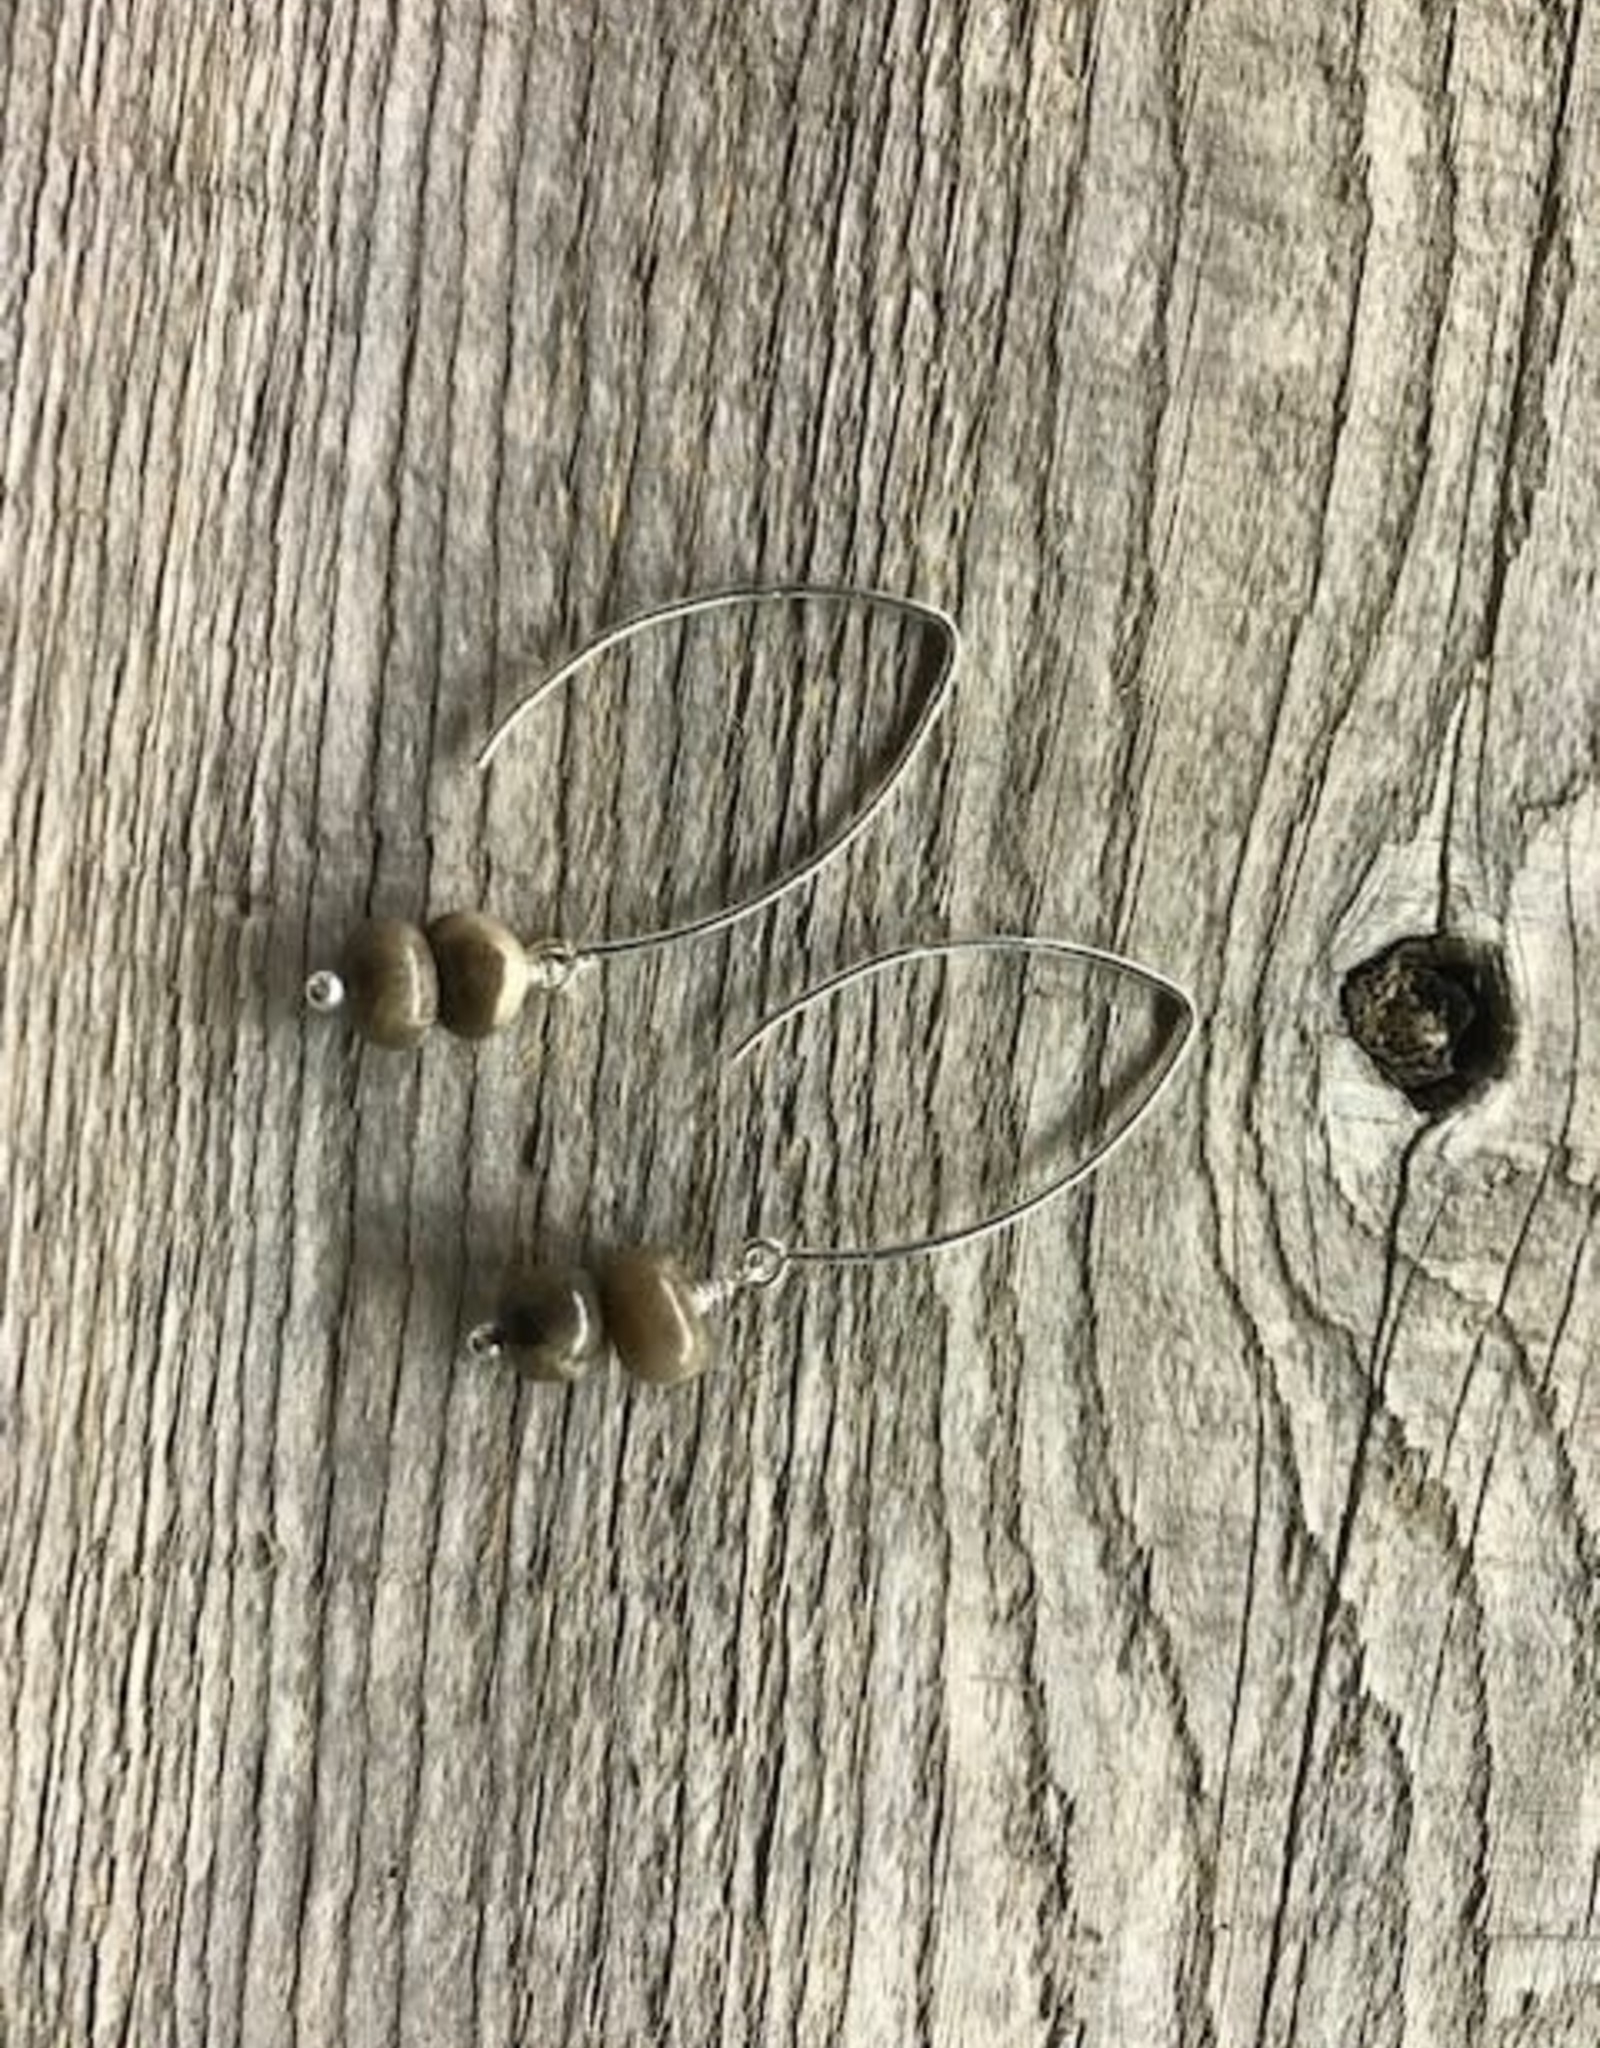 Long Wire Earrings - Petoskey Stone